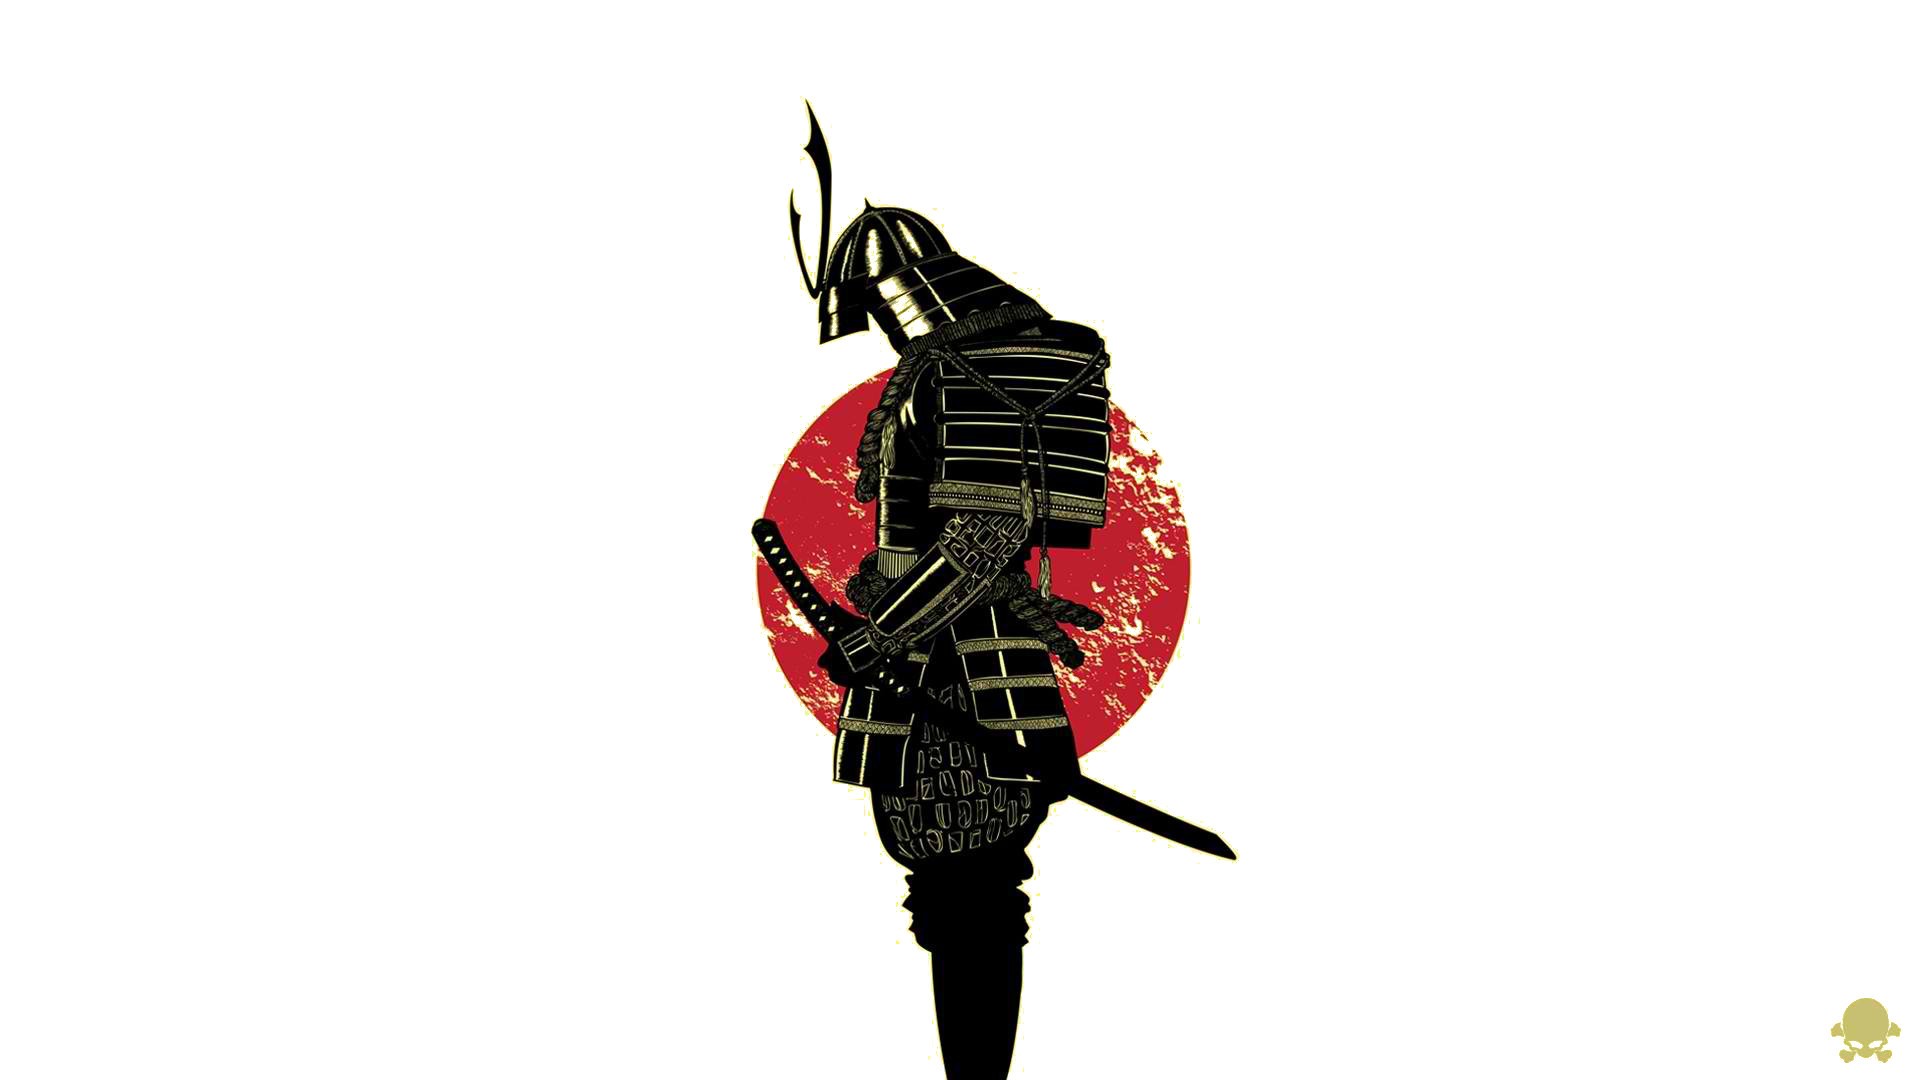 General 1920x1080 samurai simple background white background warrior artwork